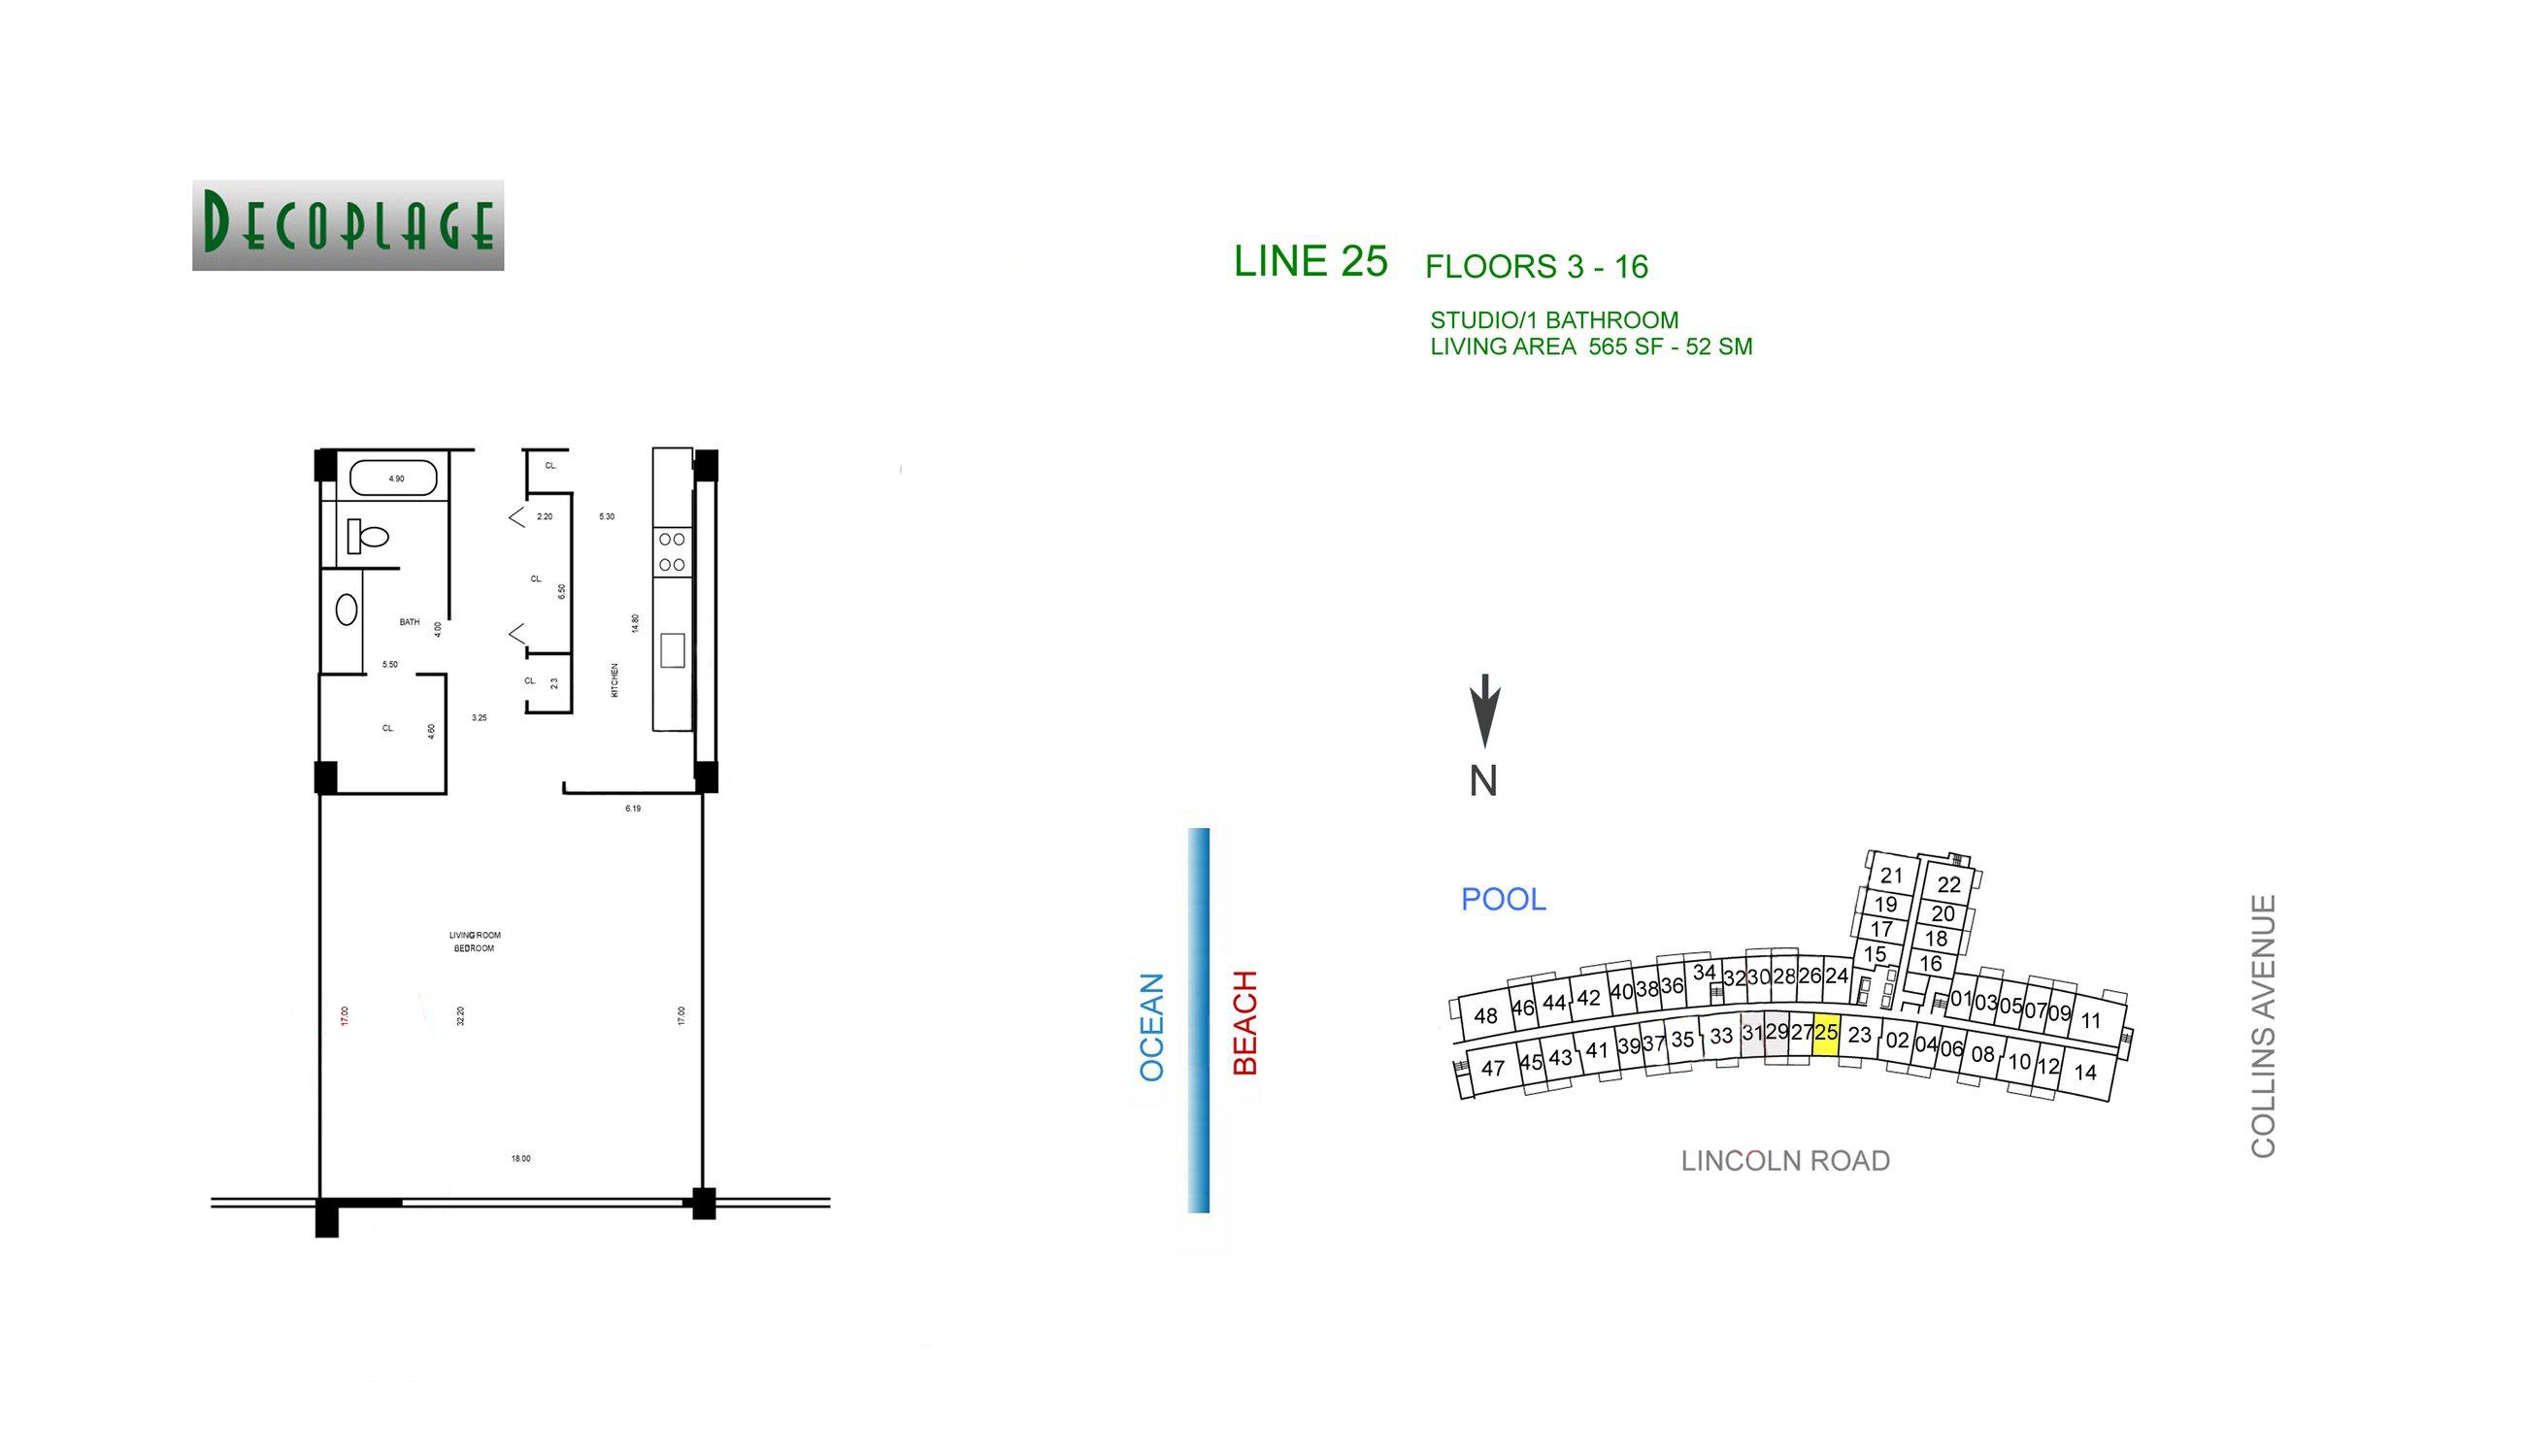 Decoplage Lines 25 Floors 3-16